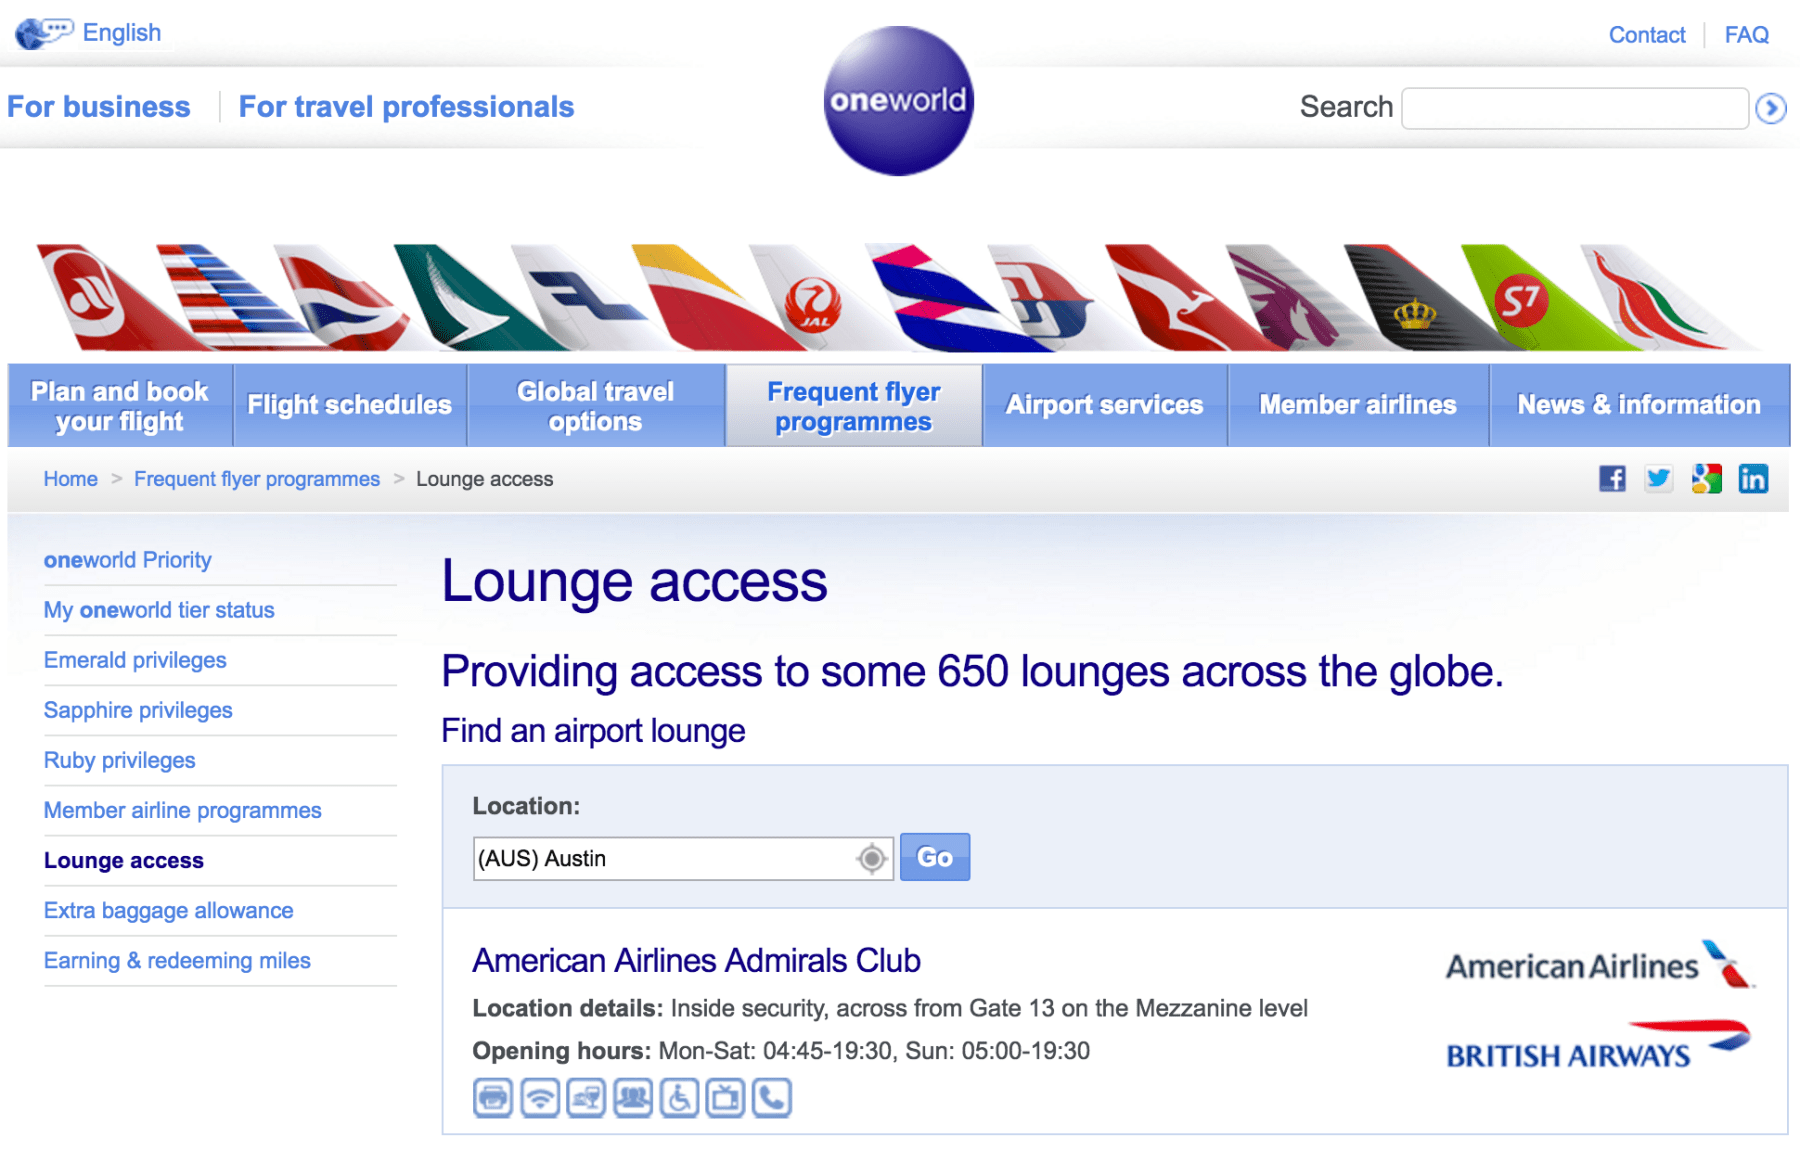 Travel service airlines: официальный сайт